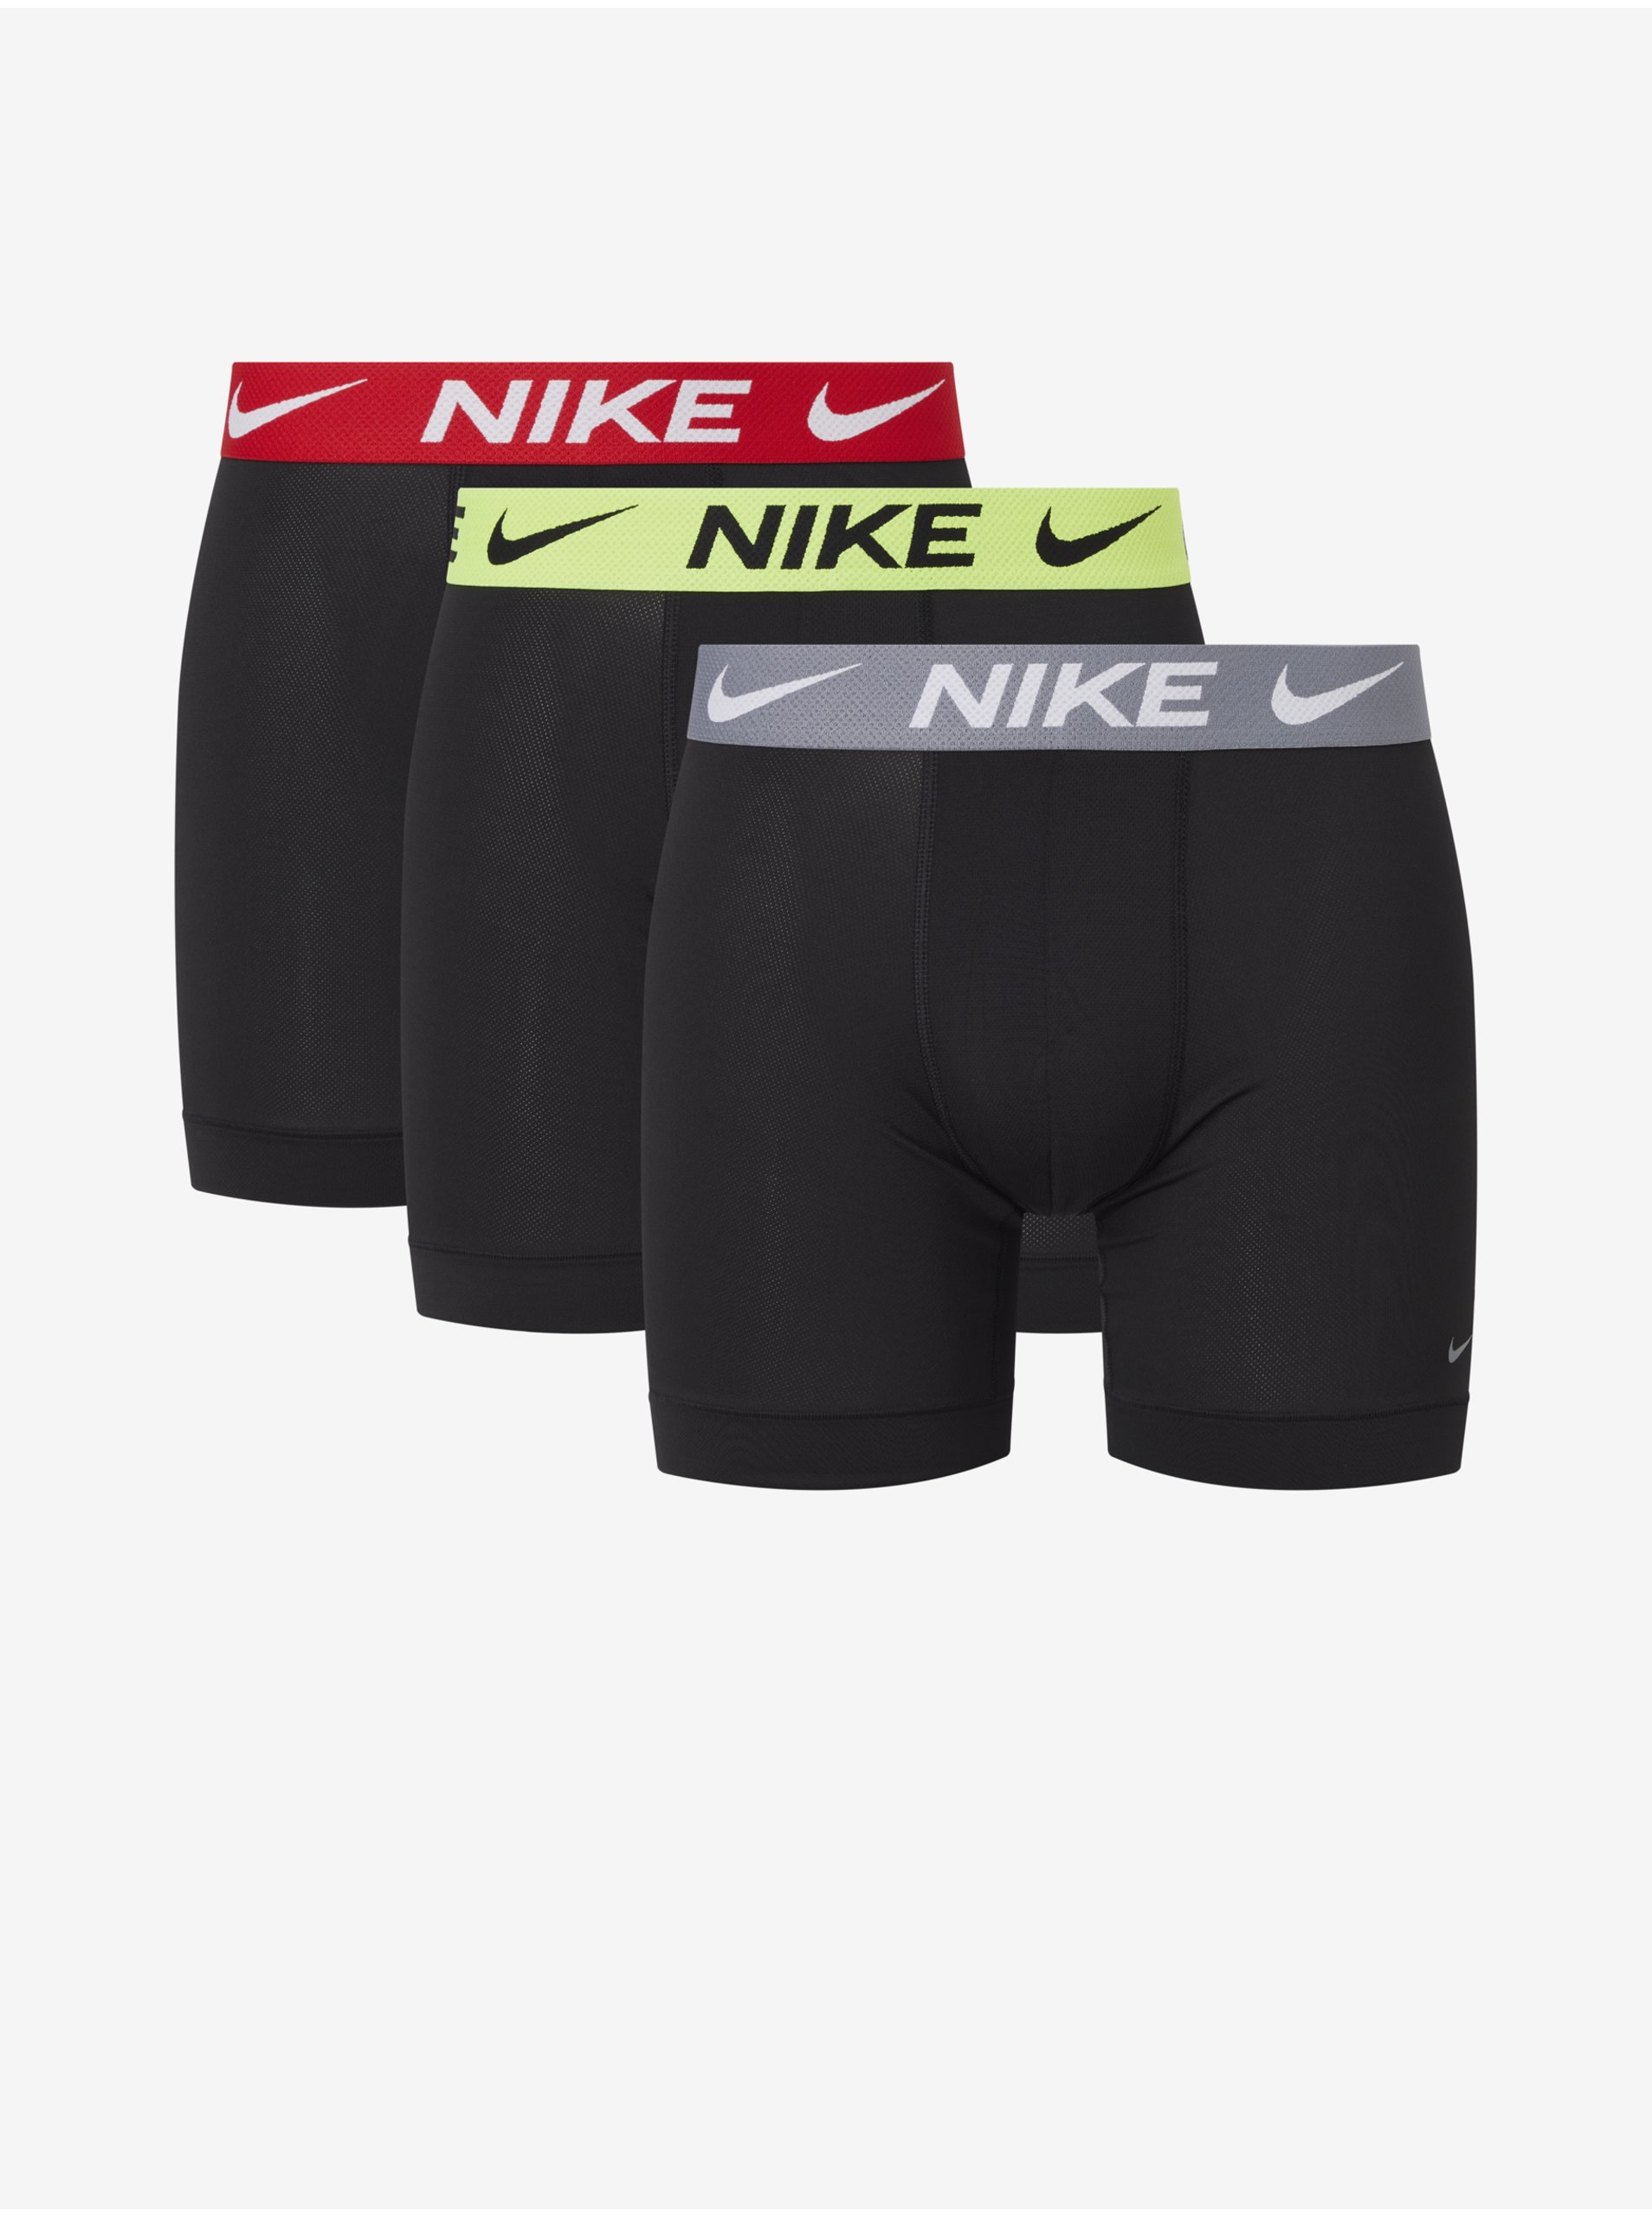 Lacno Boxerky pre mužov Nike - čierna, sivá, žltá, červená